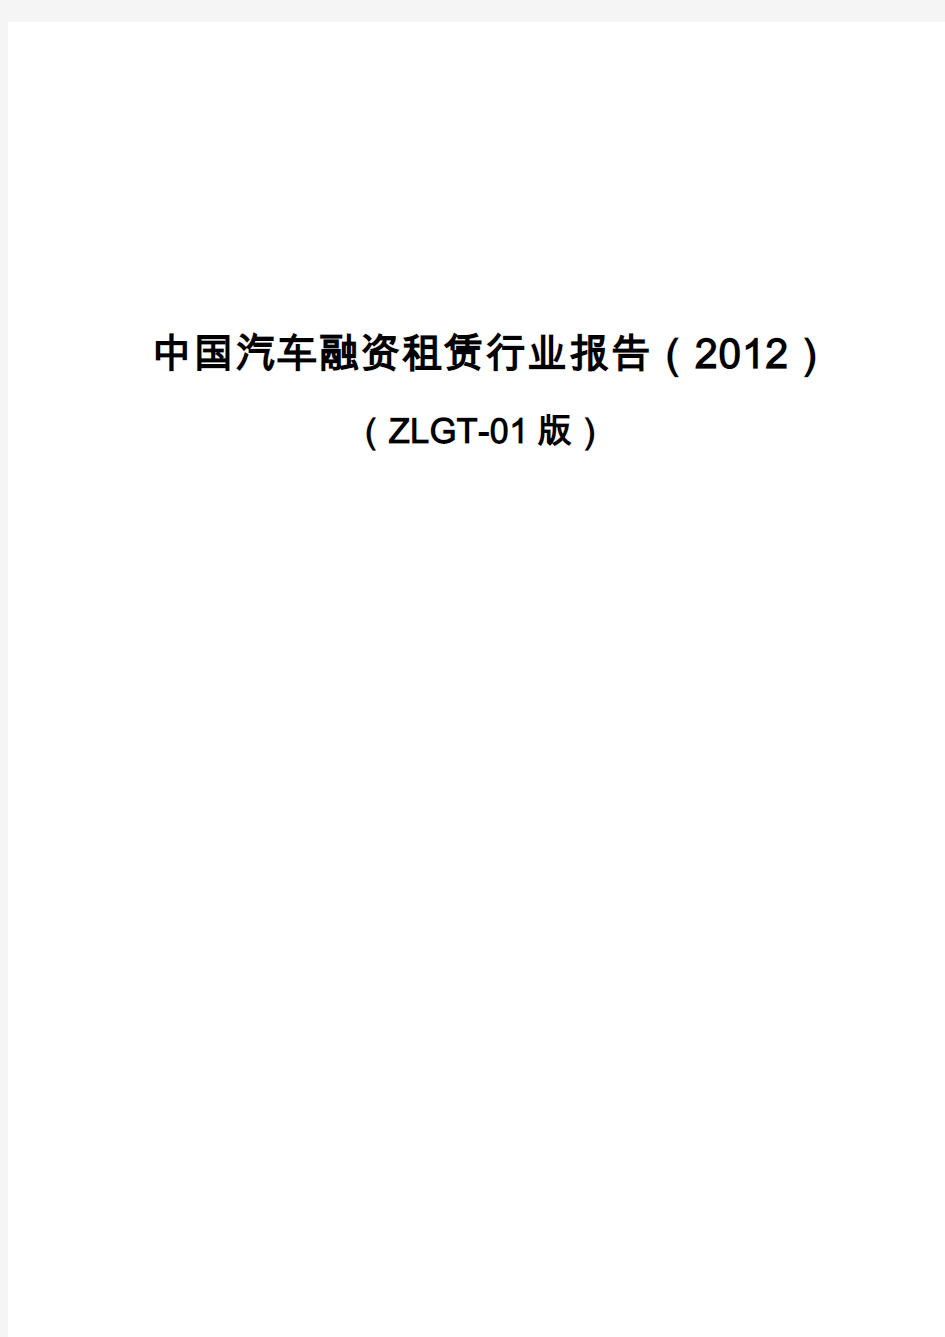 中国汽车融资租赁行业报告(2012)